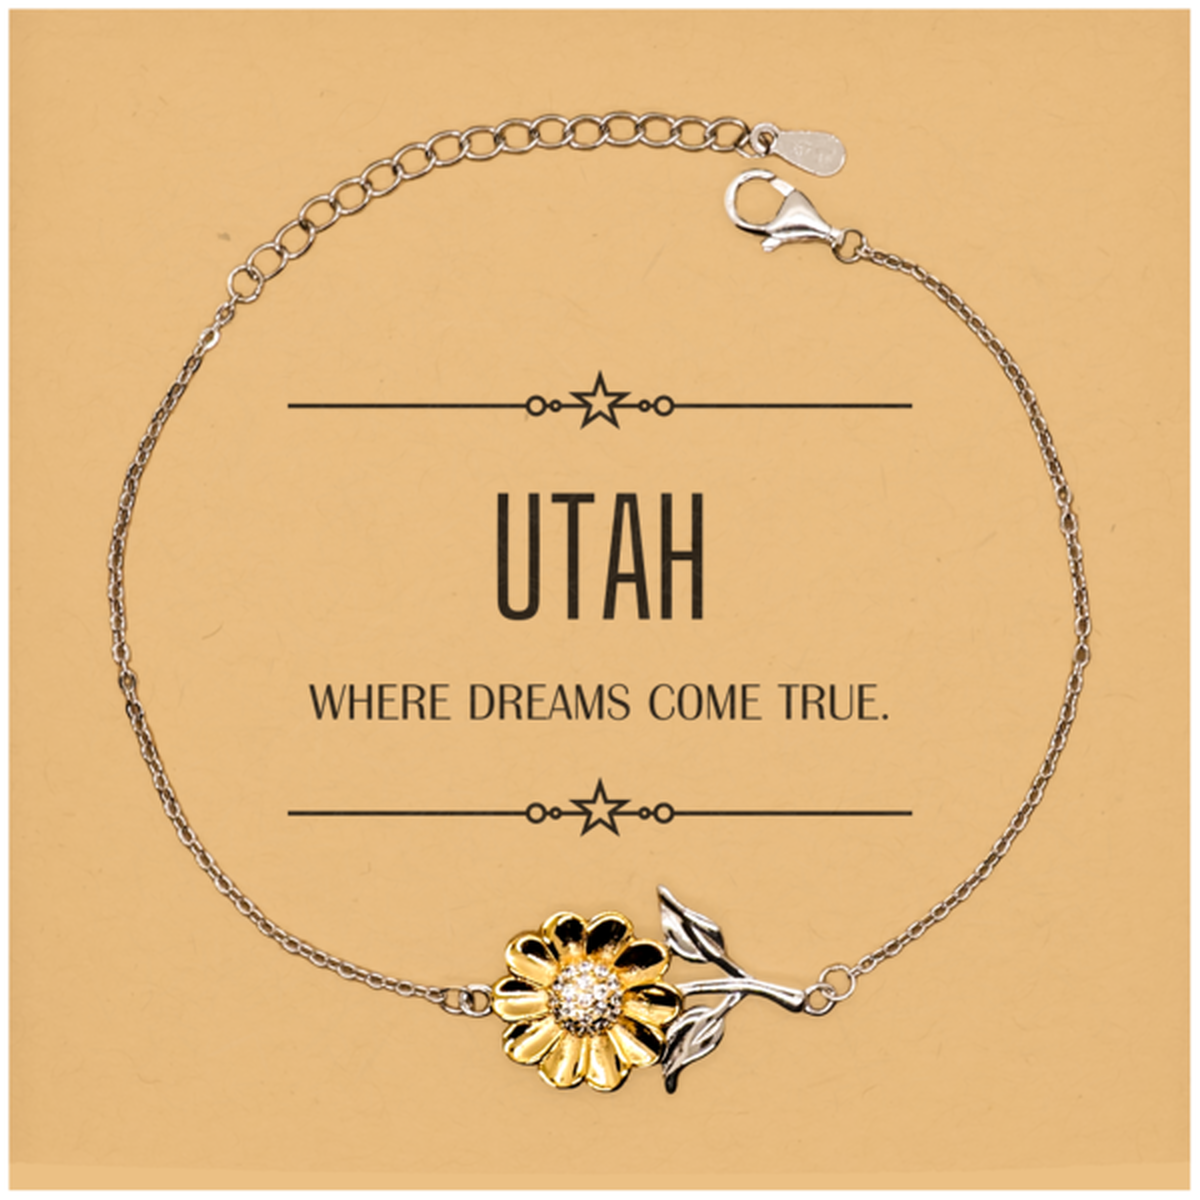 Love Utah State Sunflower Bracelet, Utah Where dreams come true, Birthday Christmas Inspirational Gifts For Utah Men, Women, Friends